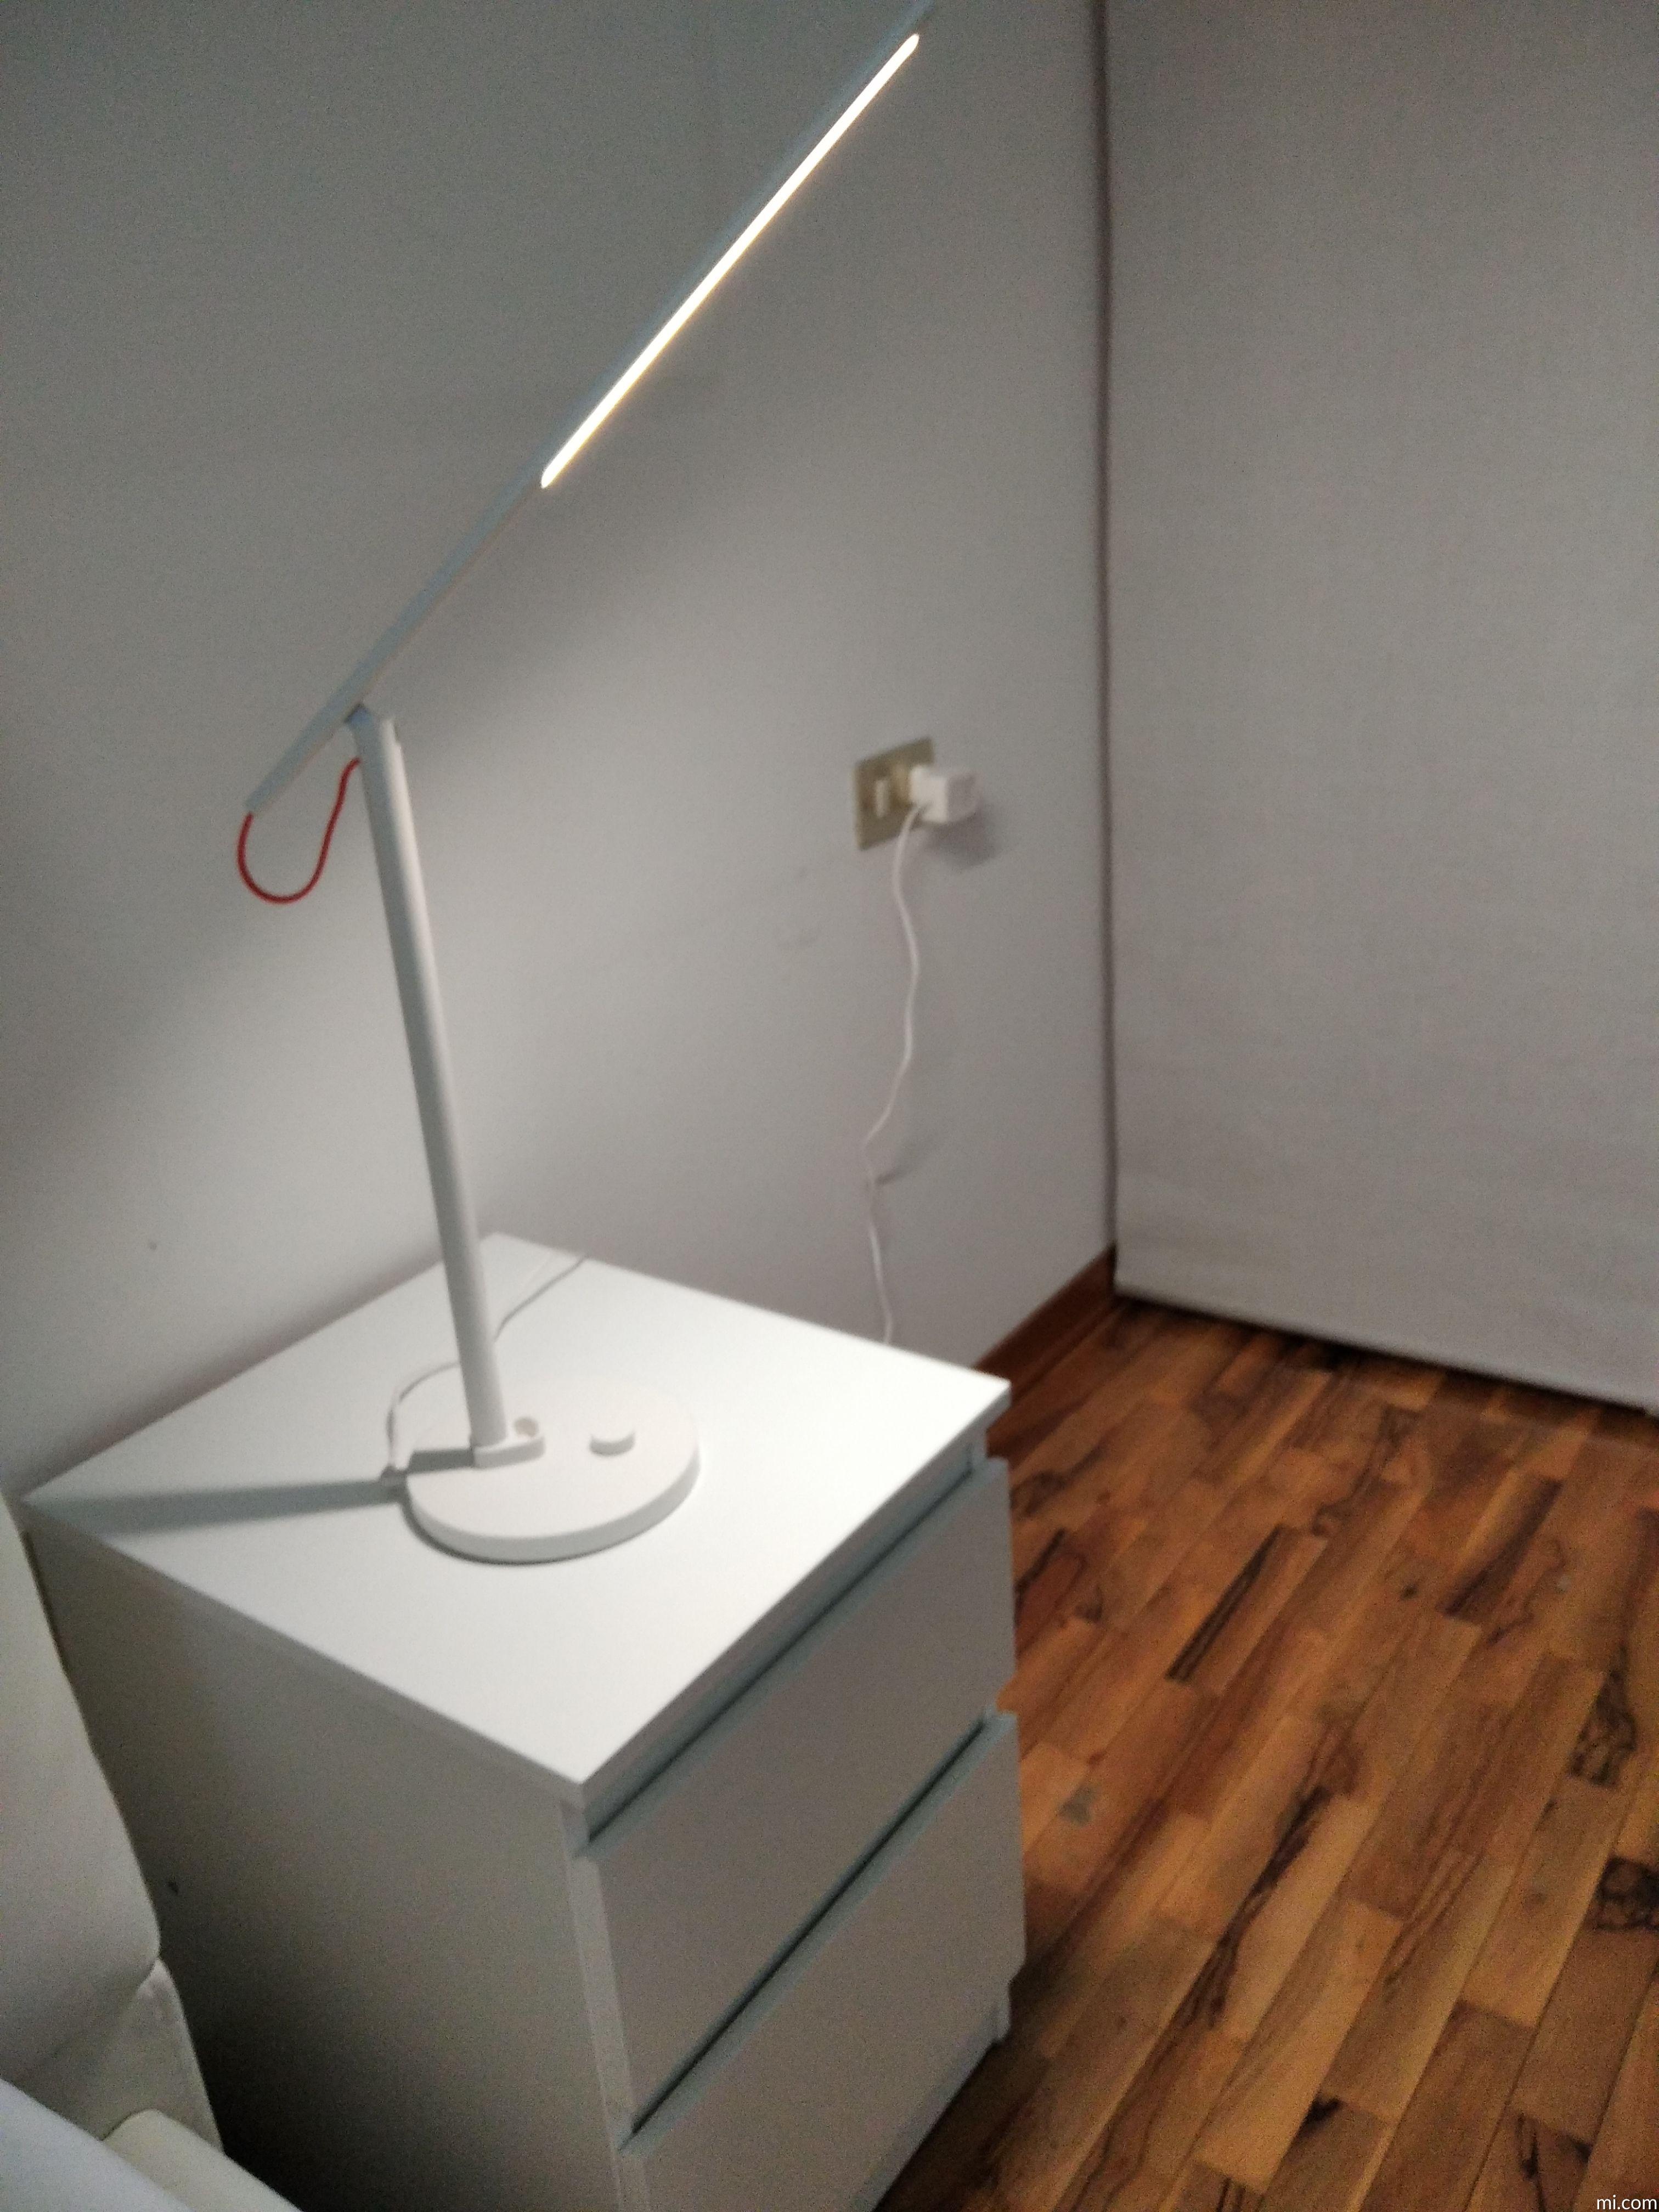 Mi LED Desk Lamp 1S]Introduzione del prodotto - la pagina